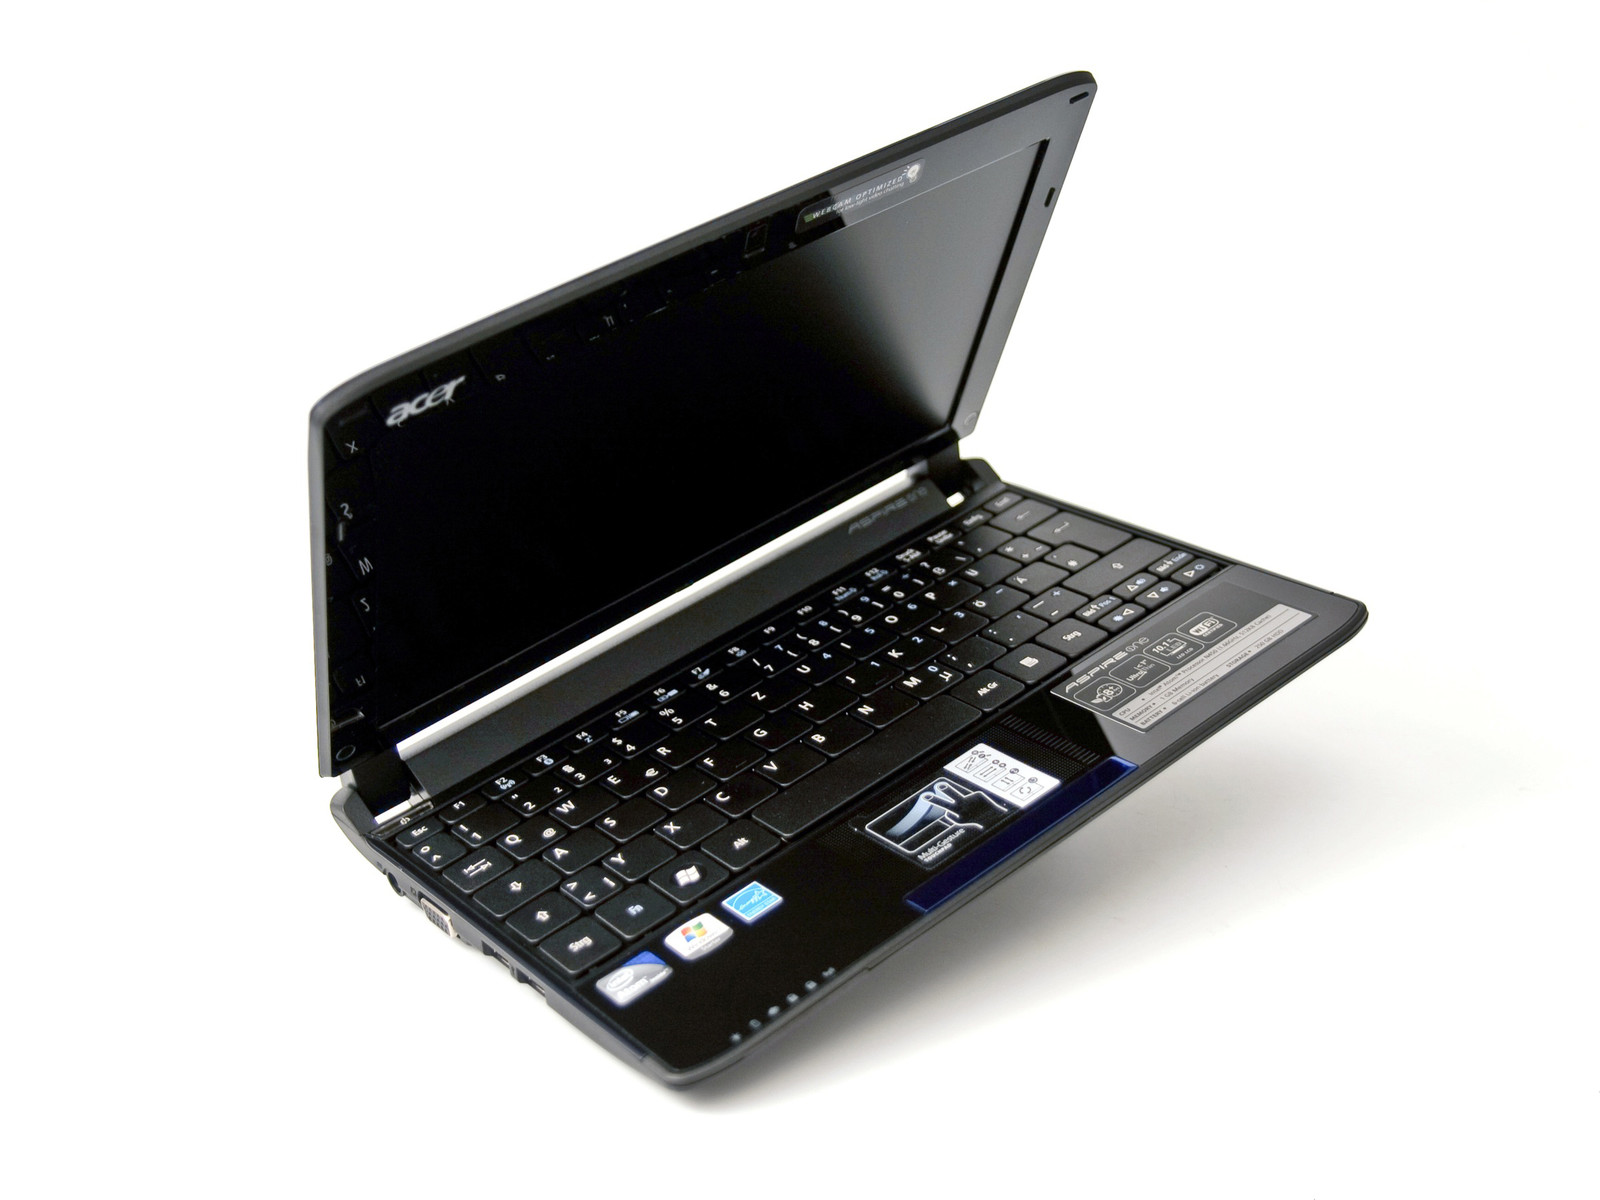 Acer Aspire One Series - Notebookcheck.net External Reviews